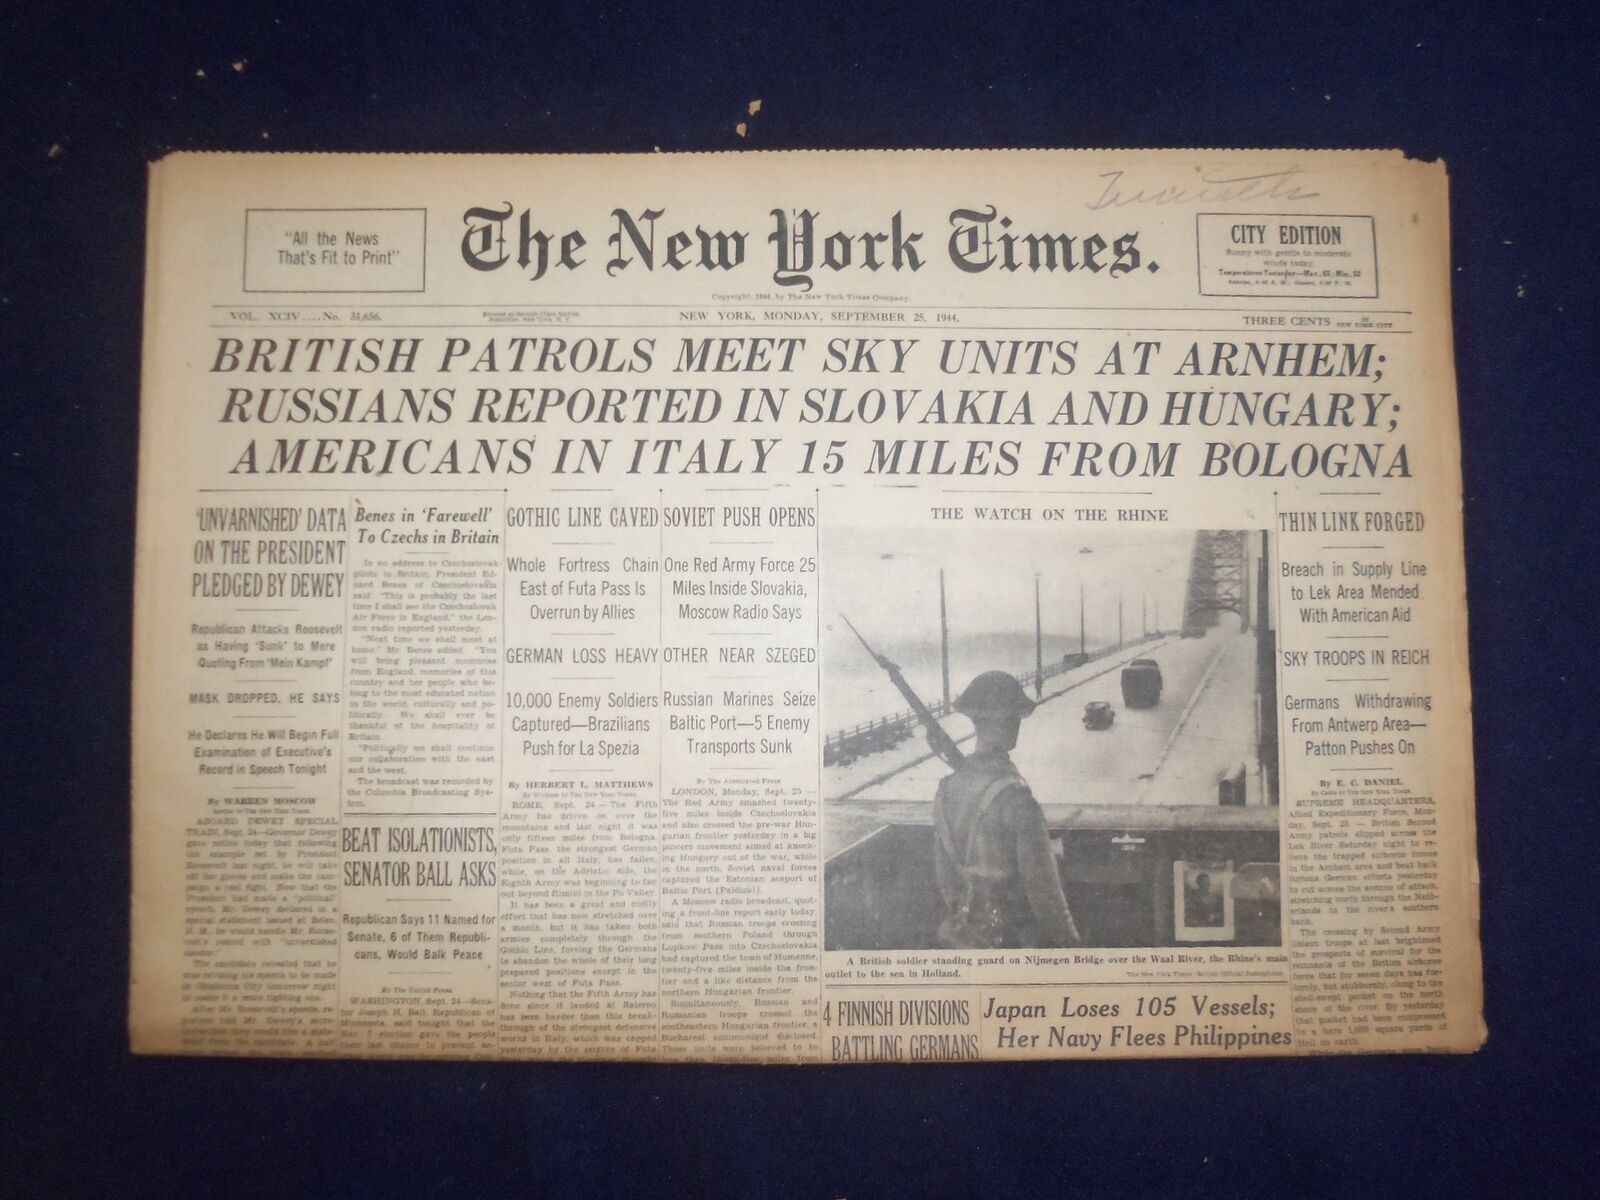 1944 SEP 25 NEW YORK TIMES - BRITISH PATROLS MEET SKY UNITS AT ARNHEM - NP 6631